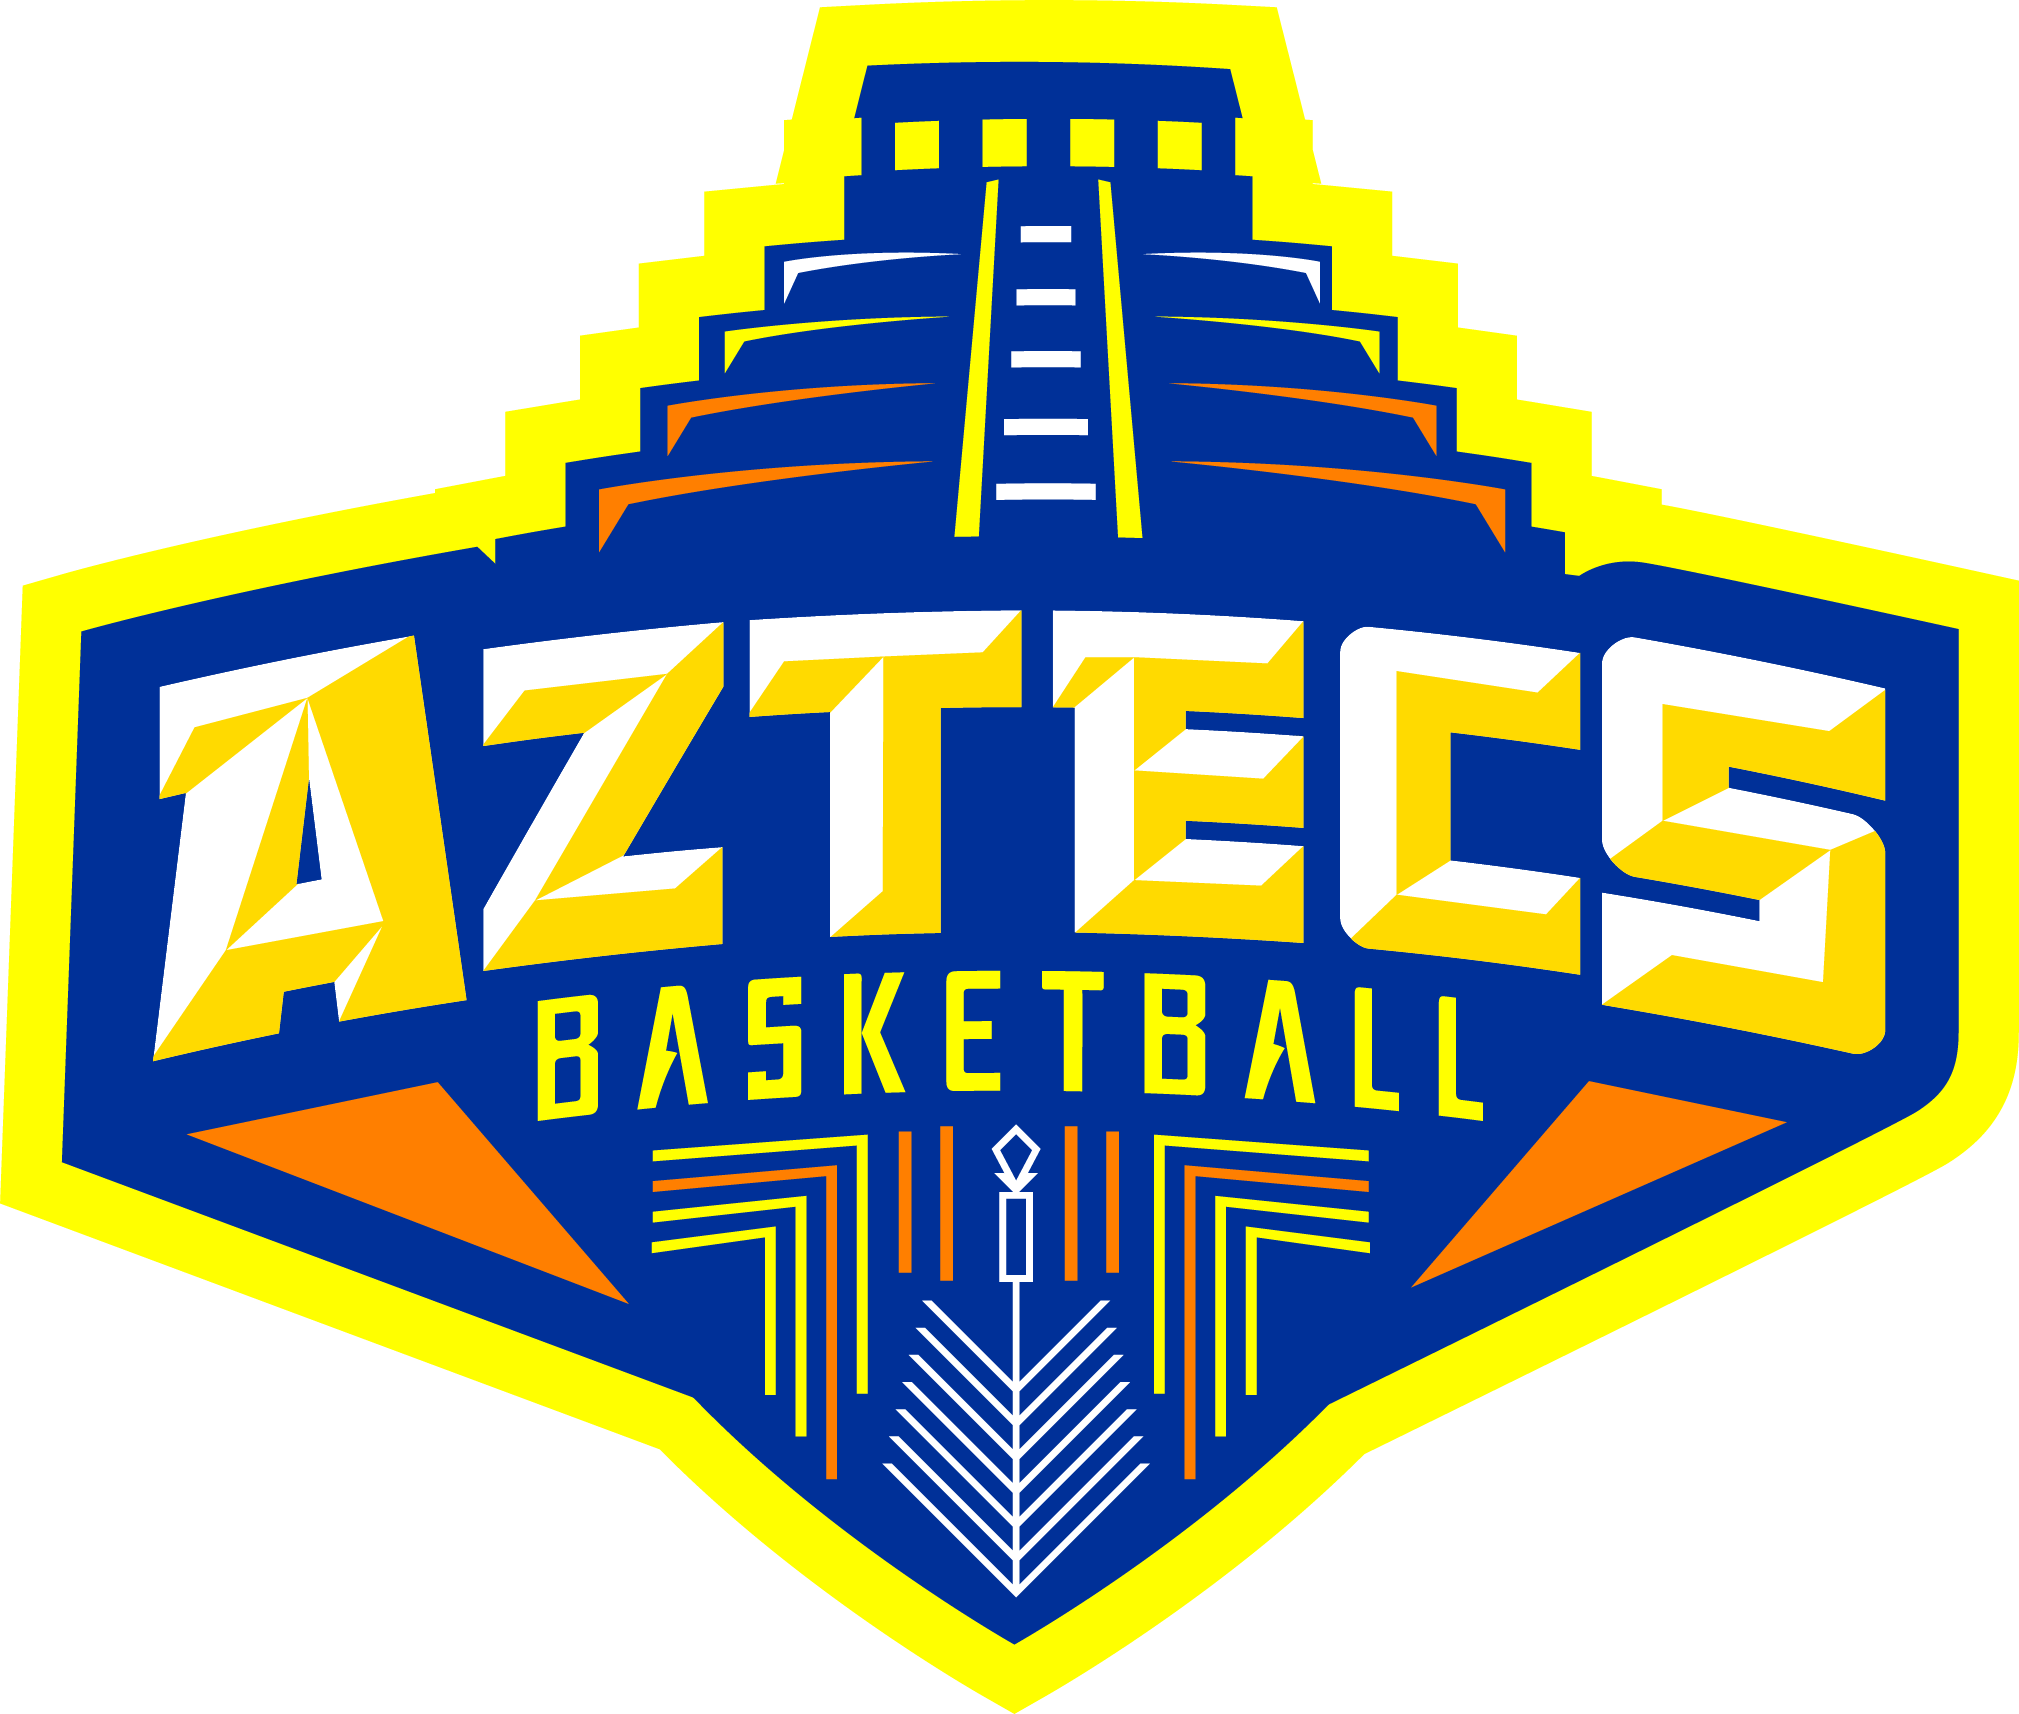 Aztecs Logo - Home - Aztecs Basketball Club